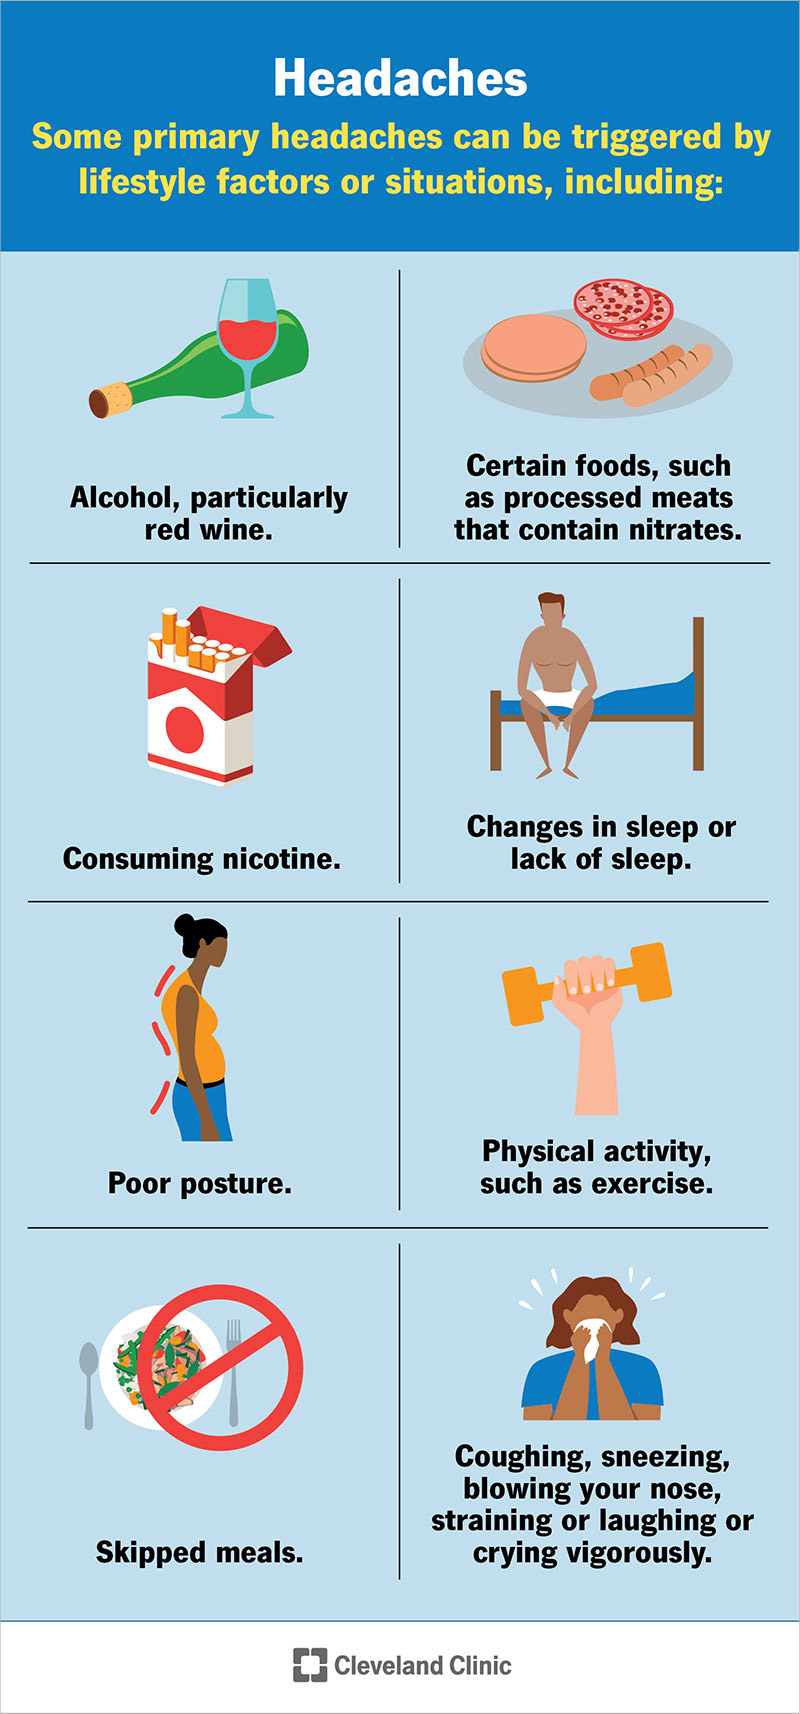 I fattori legati allo stile di vita che possono scatenare il mal di testa primario includono il consumo di alcol, il consumo di nicotina, i cambiamenti nel sonno, la cattiva postura e altro ancora.